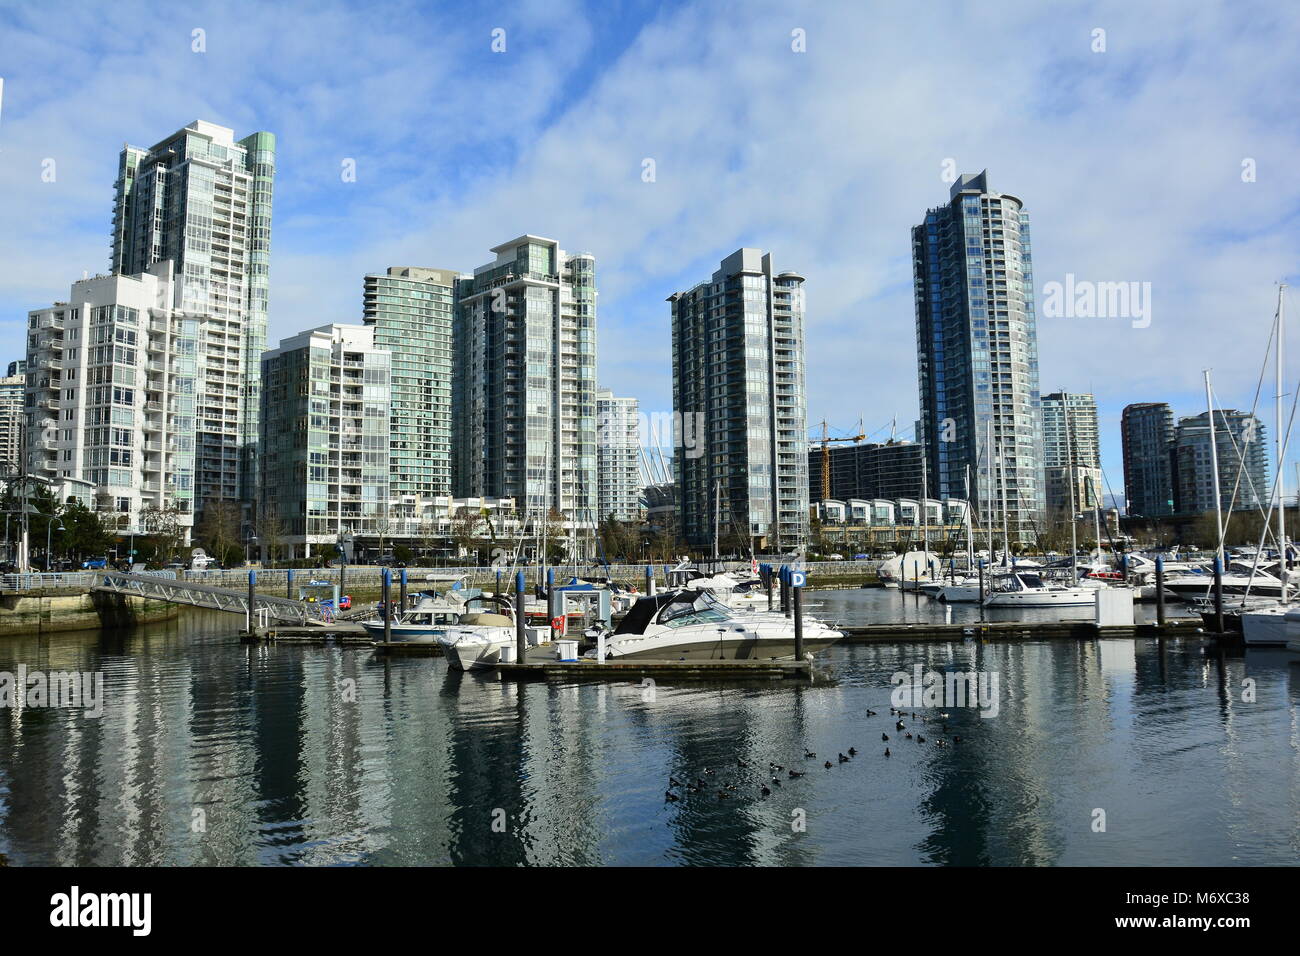 Immobilier de luxe haut de gamme dans le quartier de Yaletown, Vancouver C.-B.,Canada. Banque D'Images